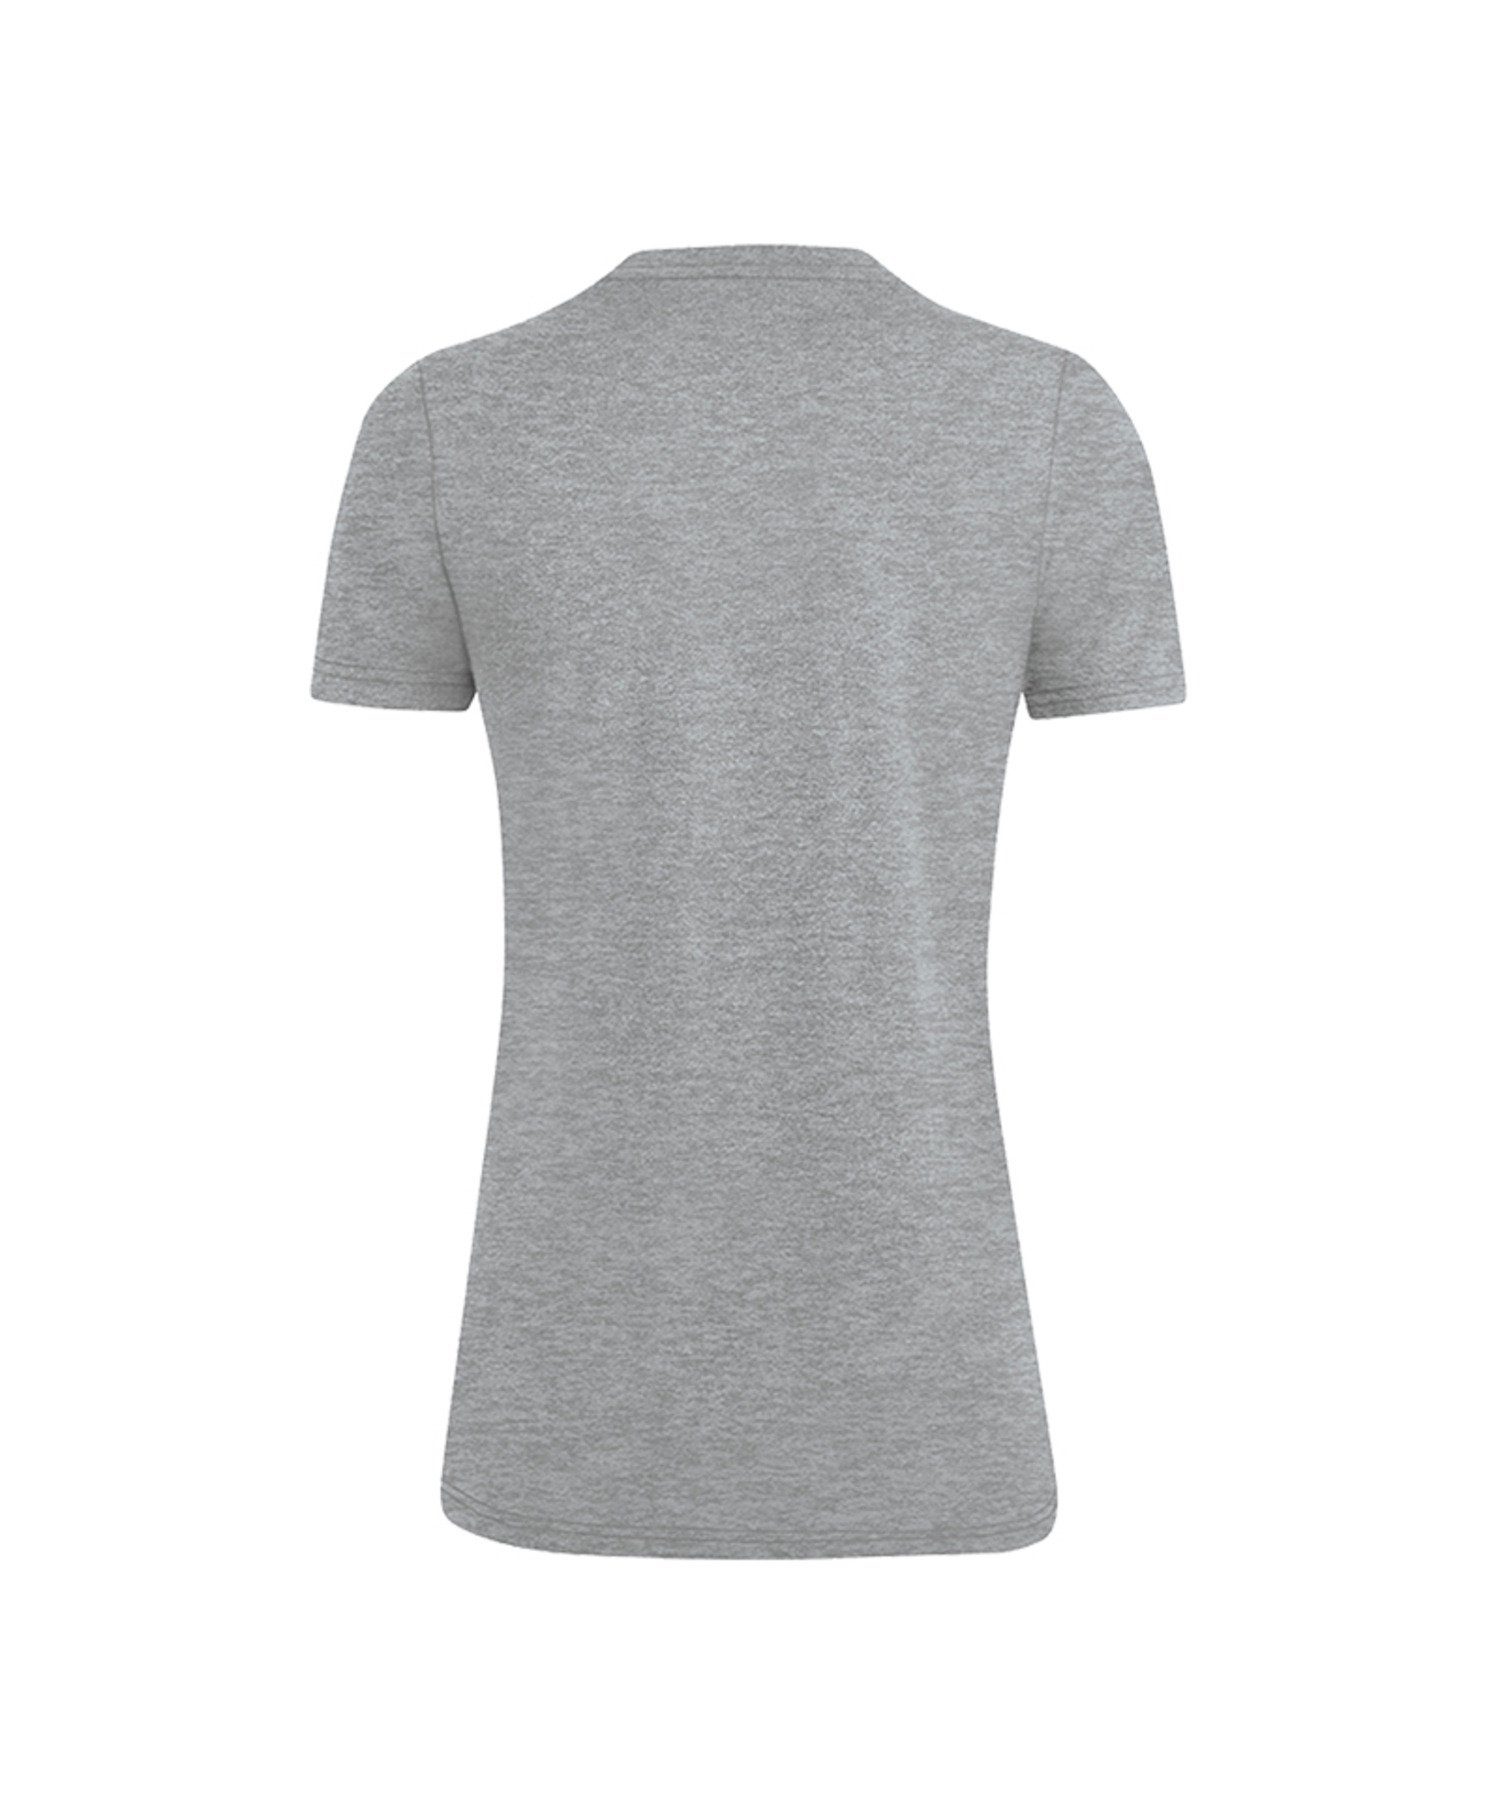 Damen T-Shirt default Grau Basic Premium T-Shirt Jako